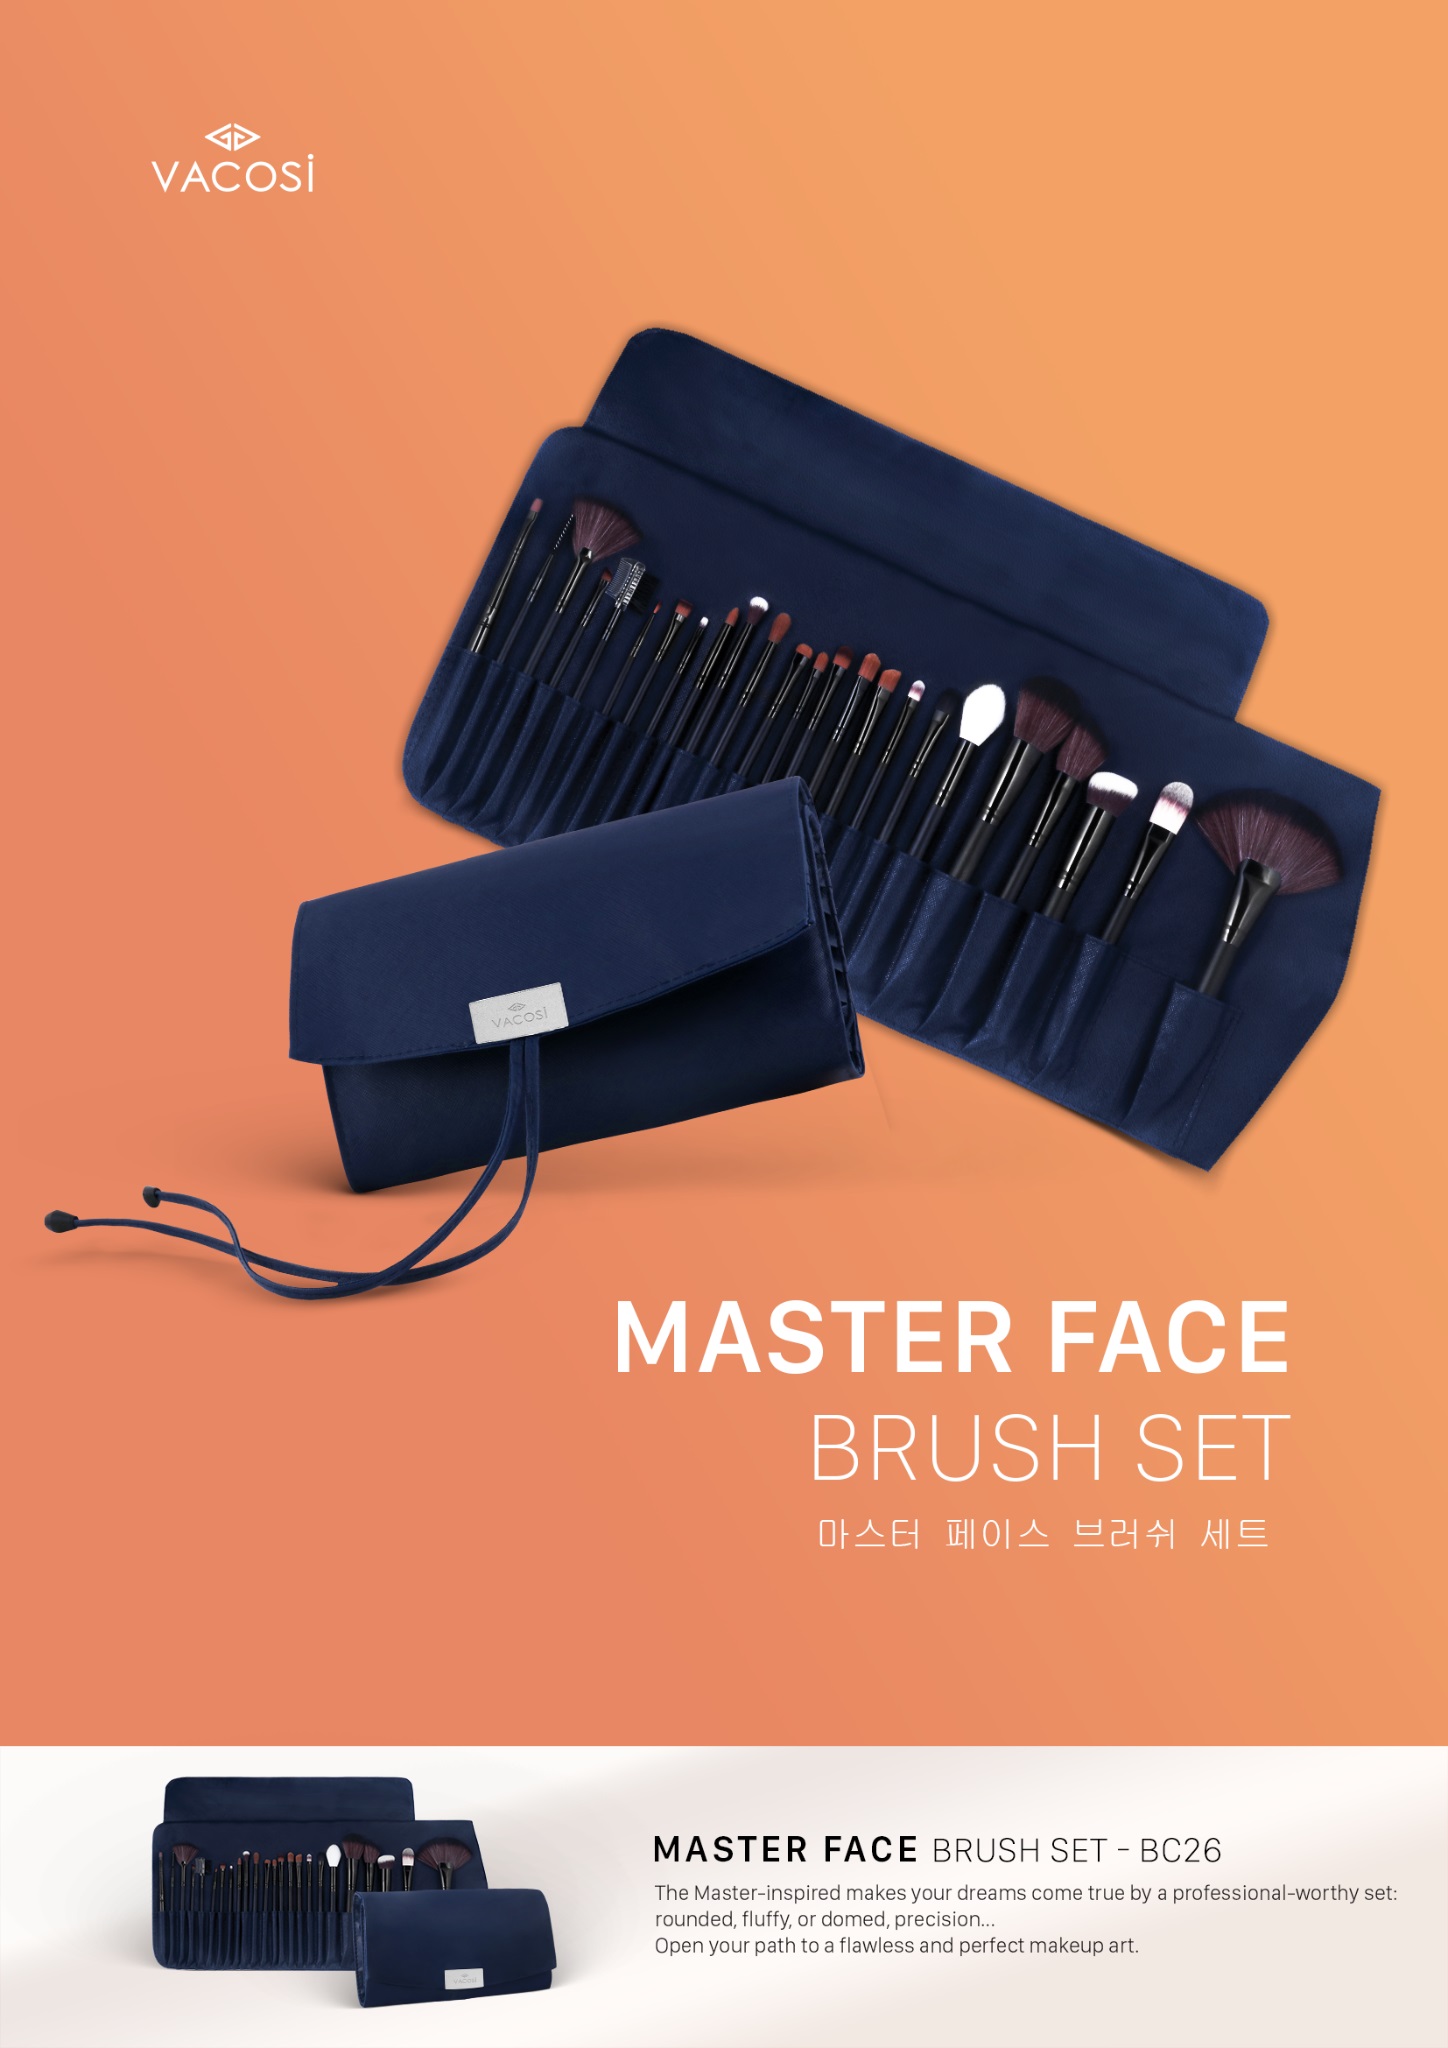 Bộ Cọ Vacosi Master Face Brush 24 Cây Bóp Da Xanh BC26 